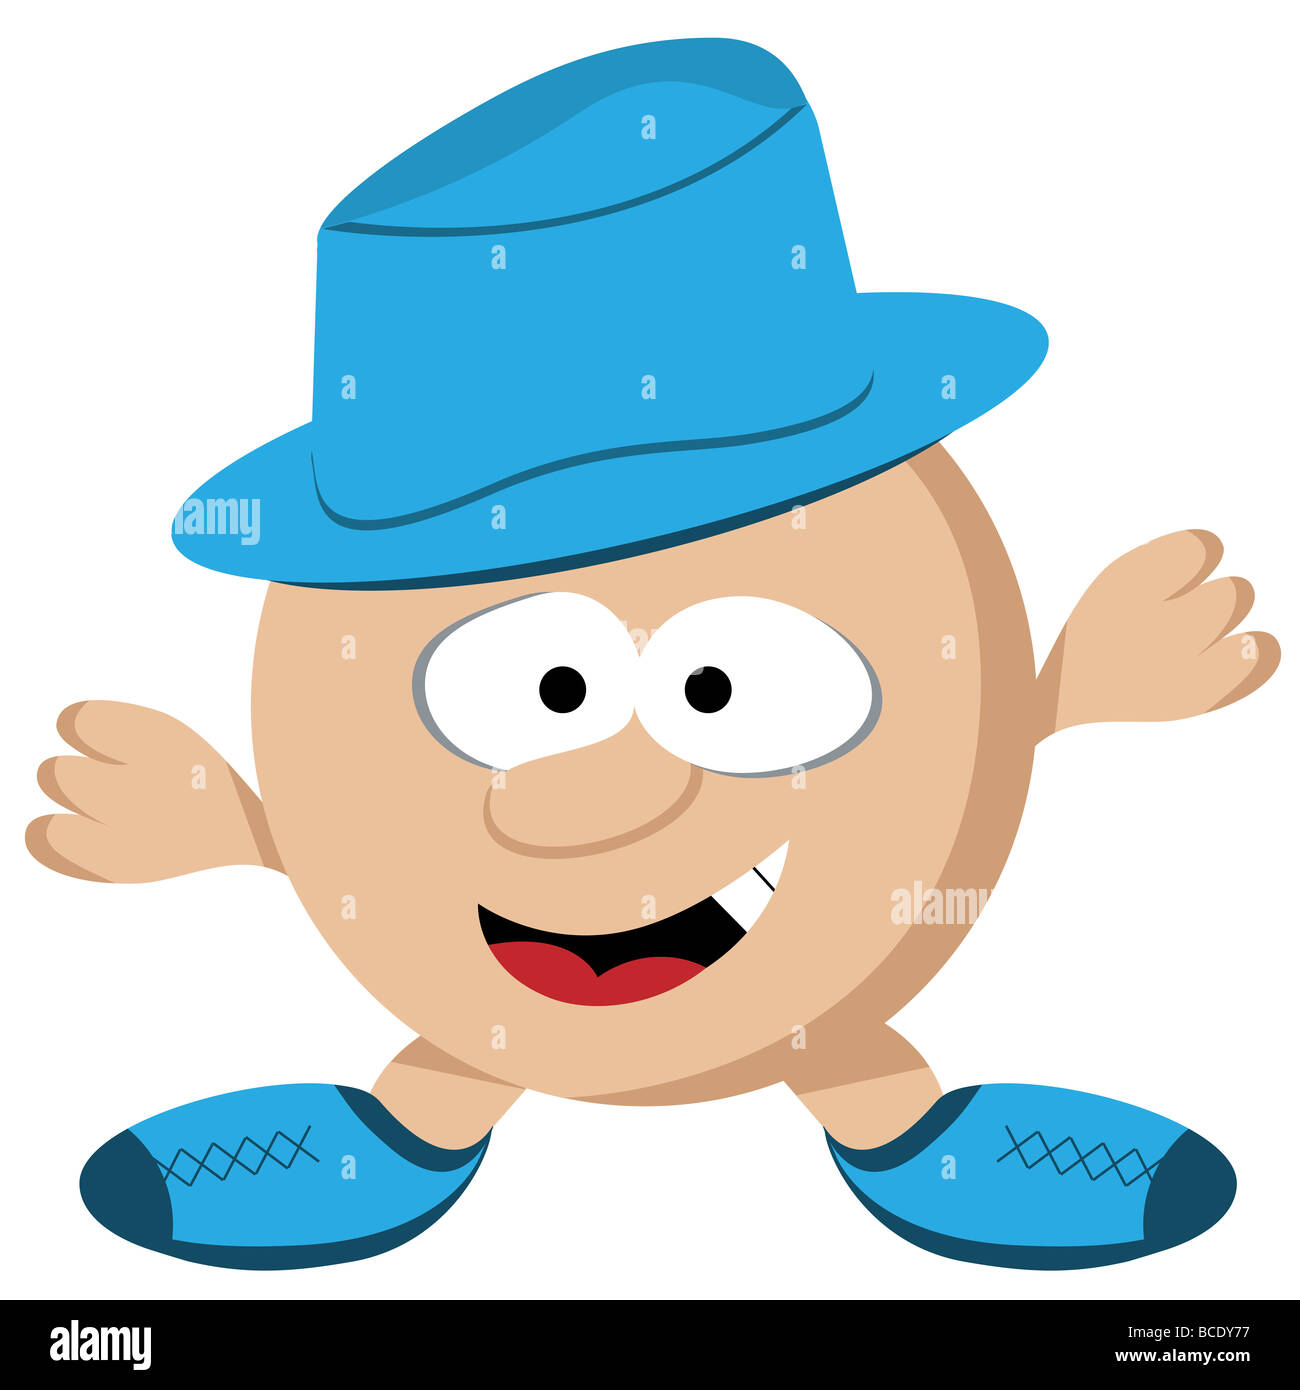 Personaggio dei fumetti round ragazzo con breve gambe e braccia che indossa un cappello blu. Faccia comico Foto Stock